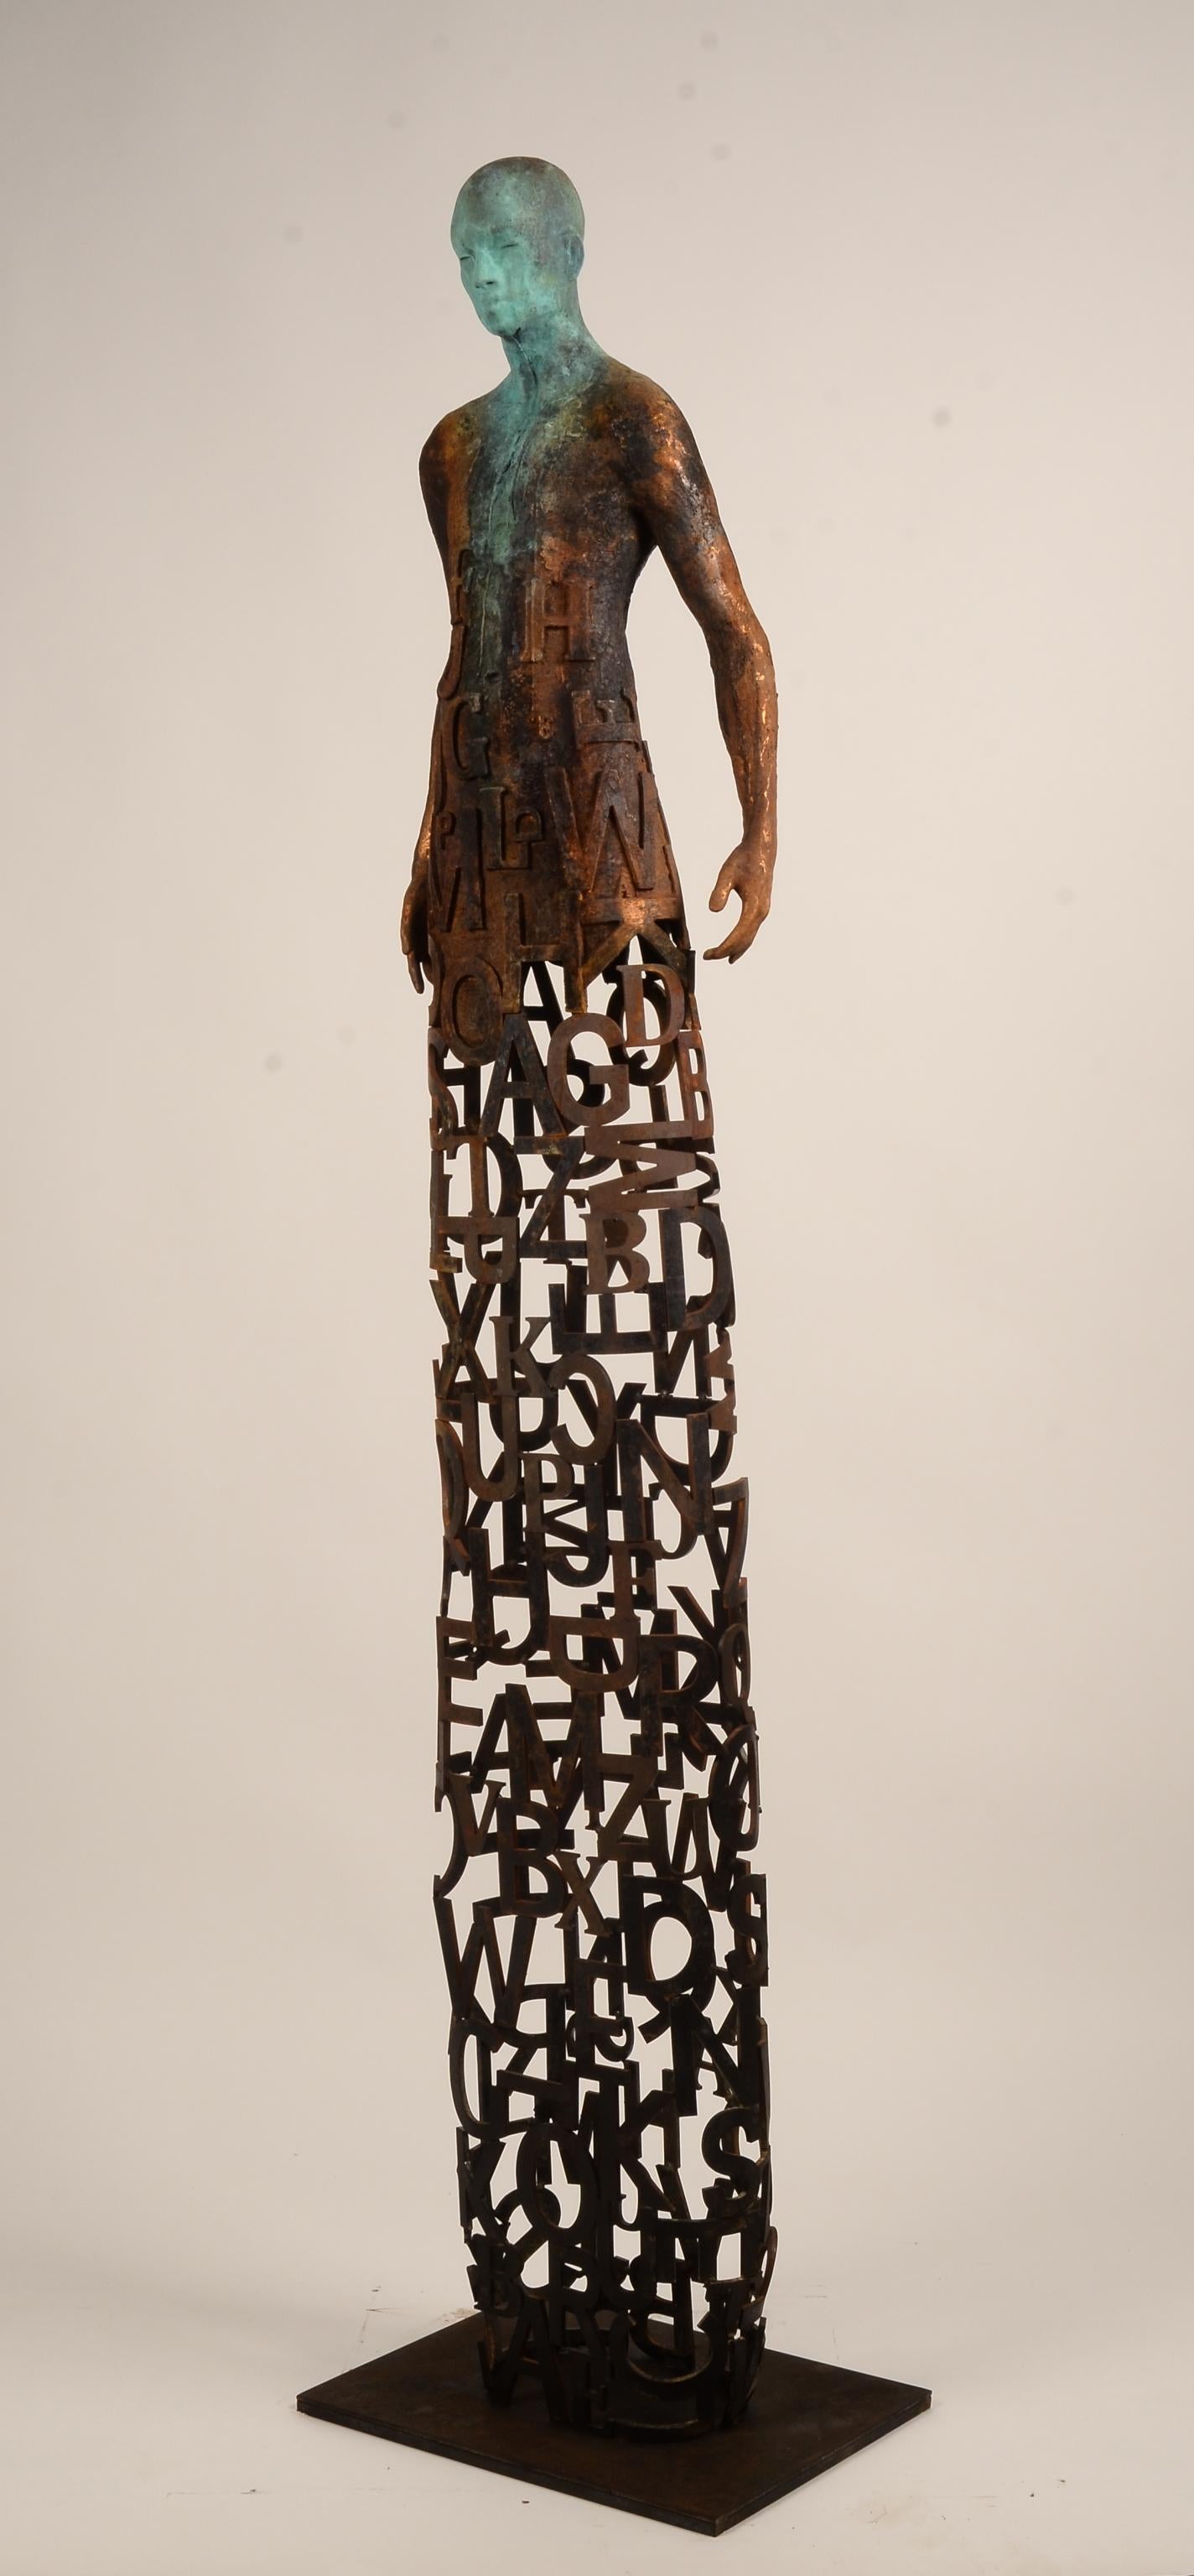 Jess Curis Skulpturen strahlen mehr als nur ein ästhetisches Vergnügen aus. Wir können sein Werk rational analysieren und die Qualität seiner Texturen und Patinierungen:: die Rundheit seiner Formen:: die kühne Materialkombination:: das Spiel mit dem